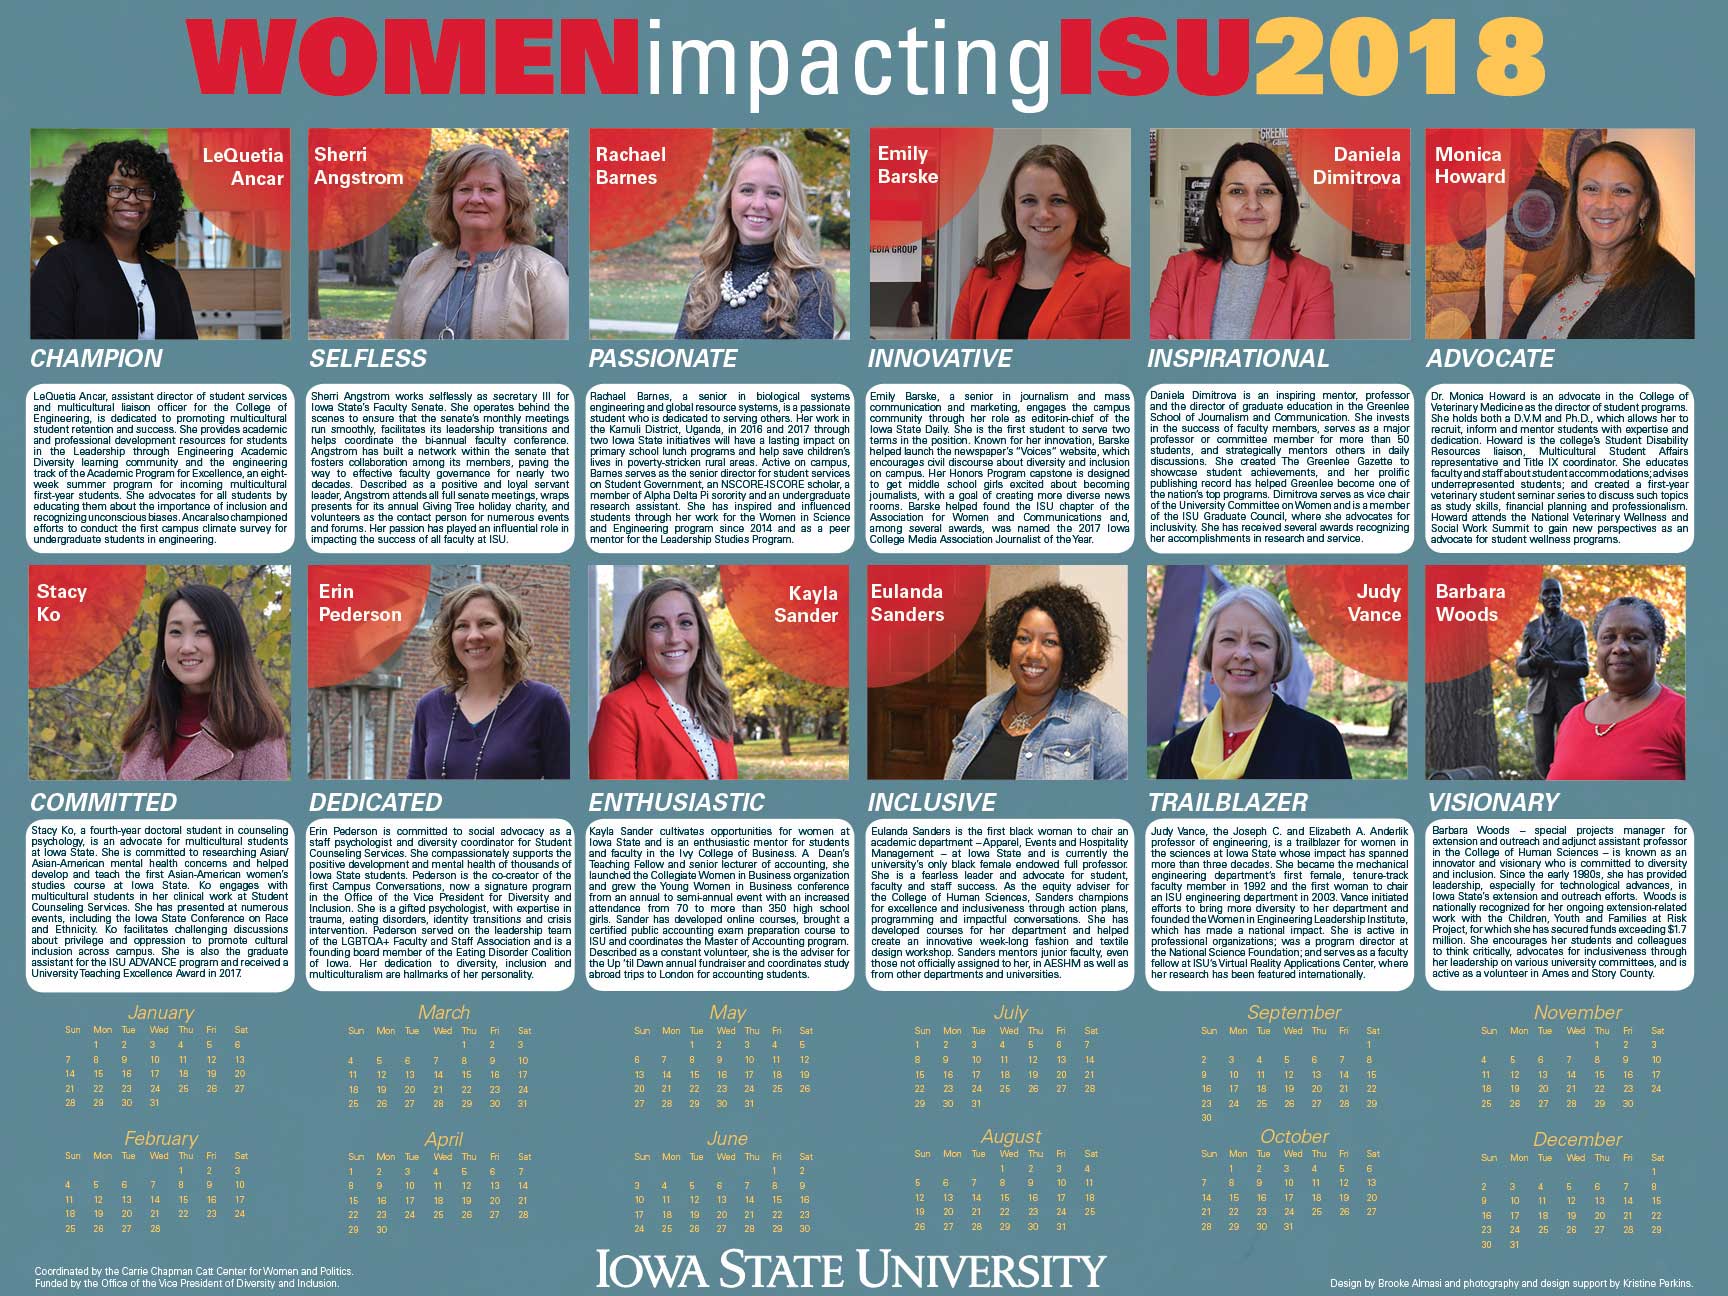 2018 Women Impacting ISU calendar